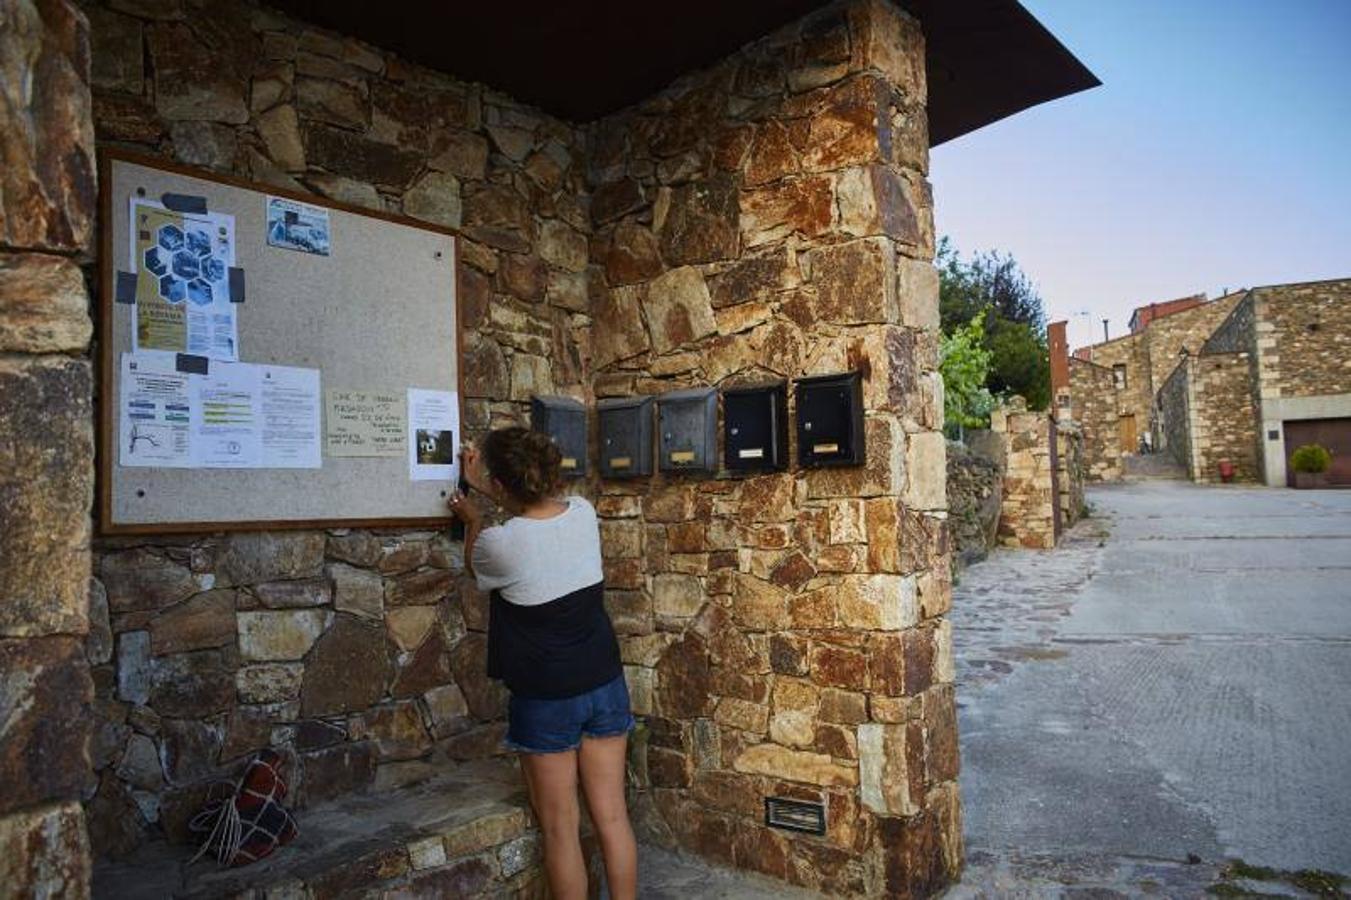 9. Buzones de correos comunitarios en Madarcos